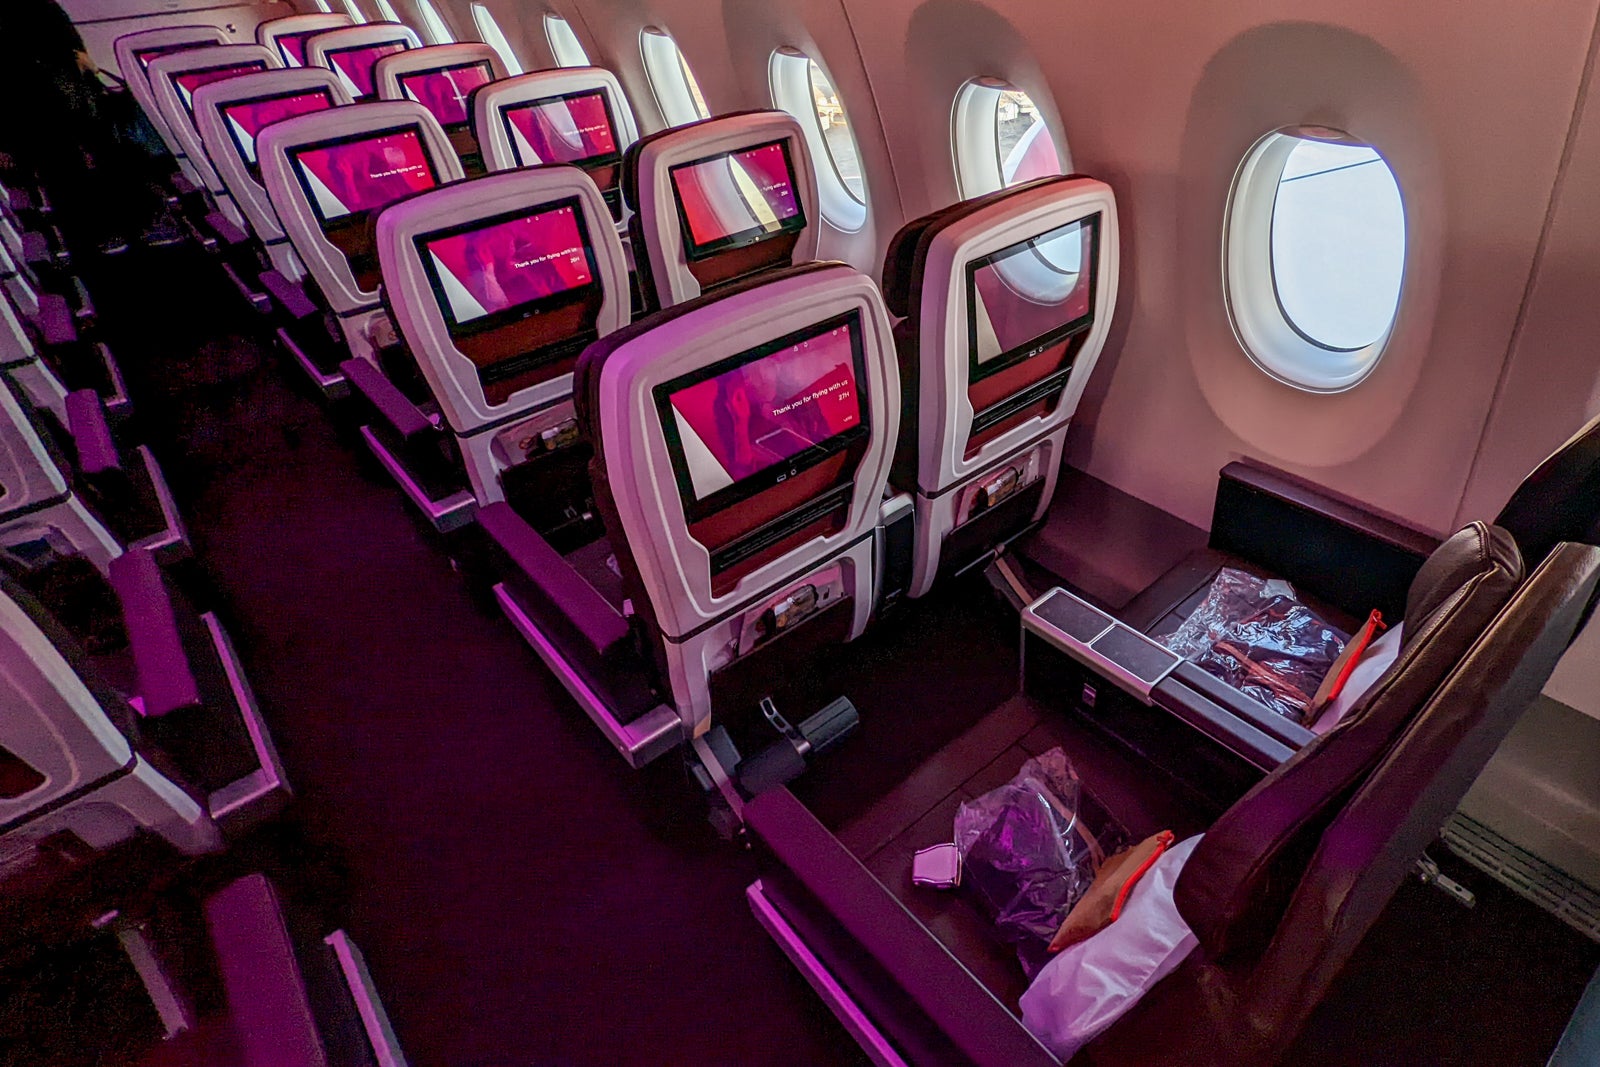 Virgin Atlantic Premium Cabins And Seats